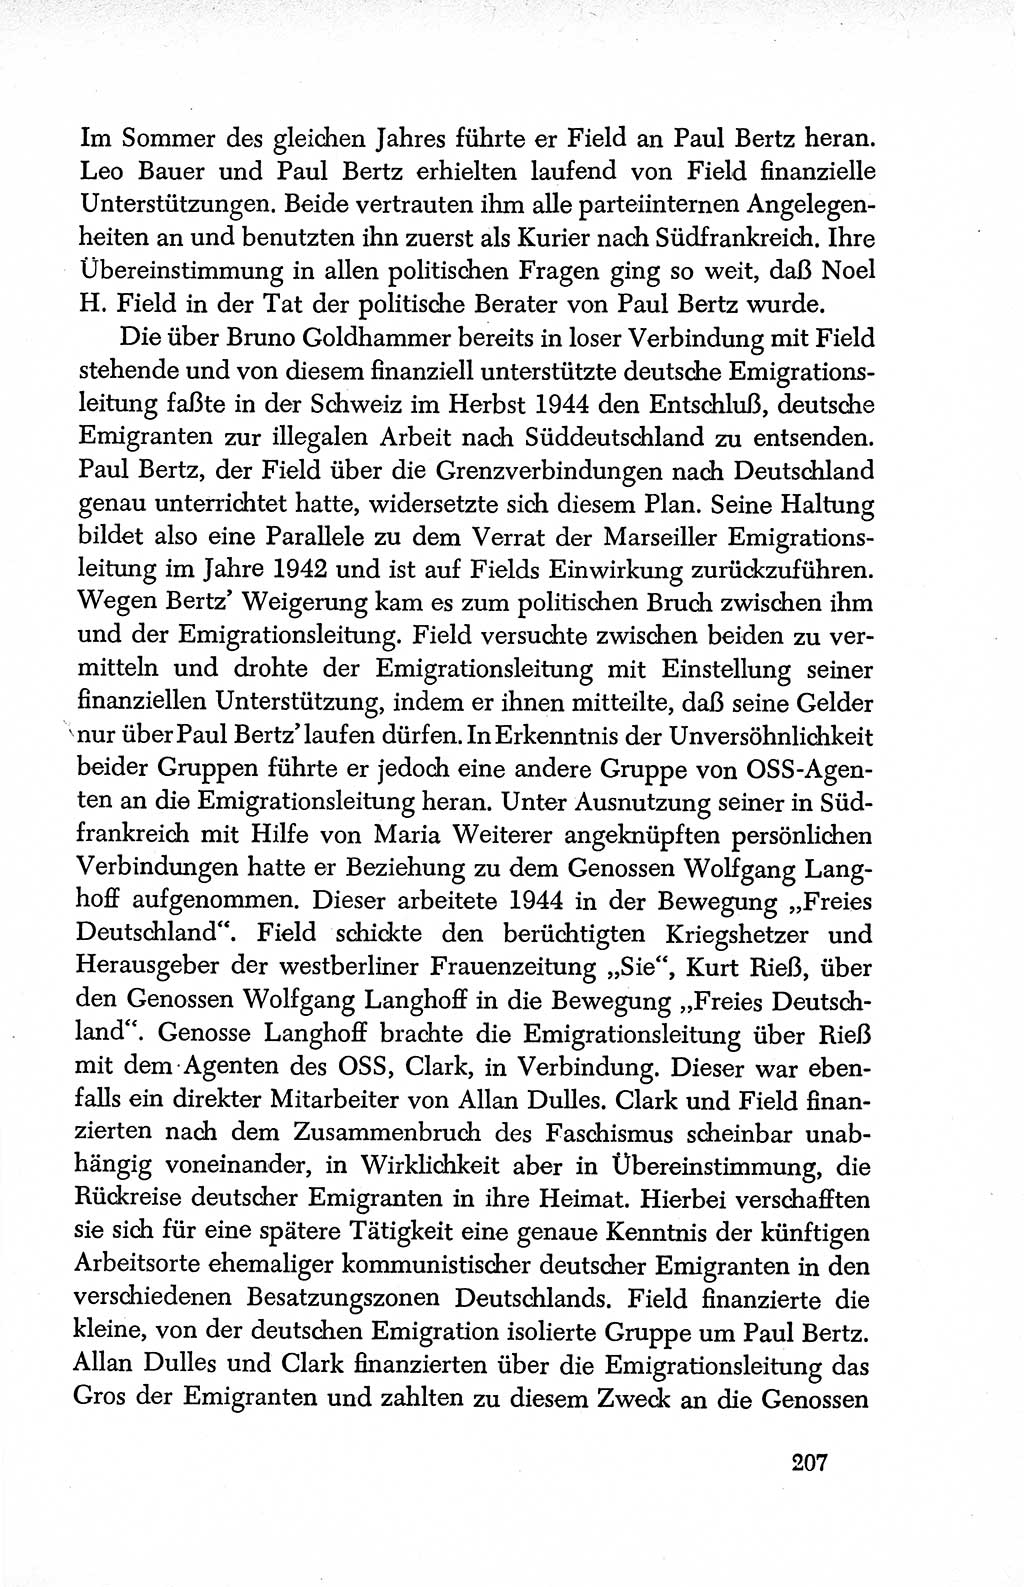 Dokumente der Sozialistischen Einheitspartei Deutschlands (SED) [Deutsche Demokratische Republik (DDR)] 1950-1952, Seite 207 (Dok. SED DDR 1950-1952, S. 207)